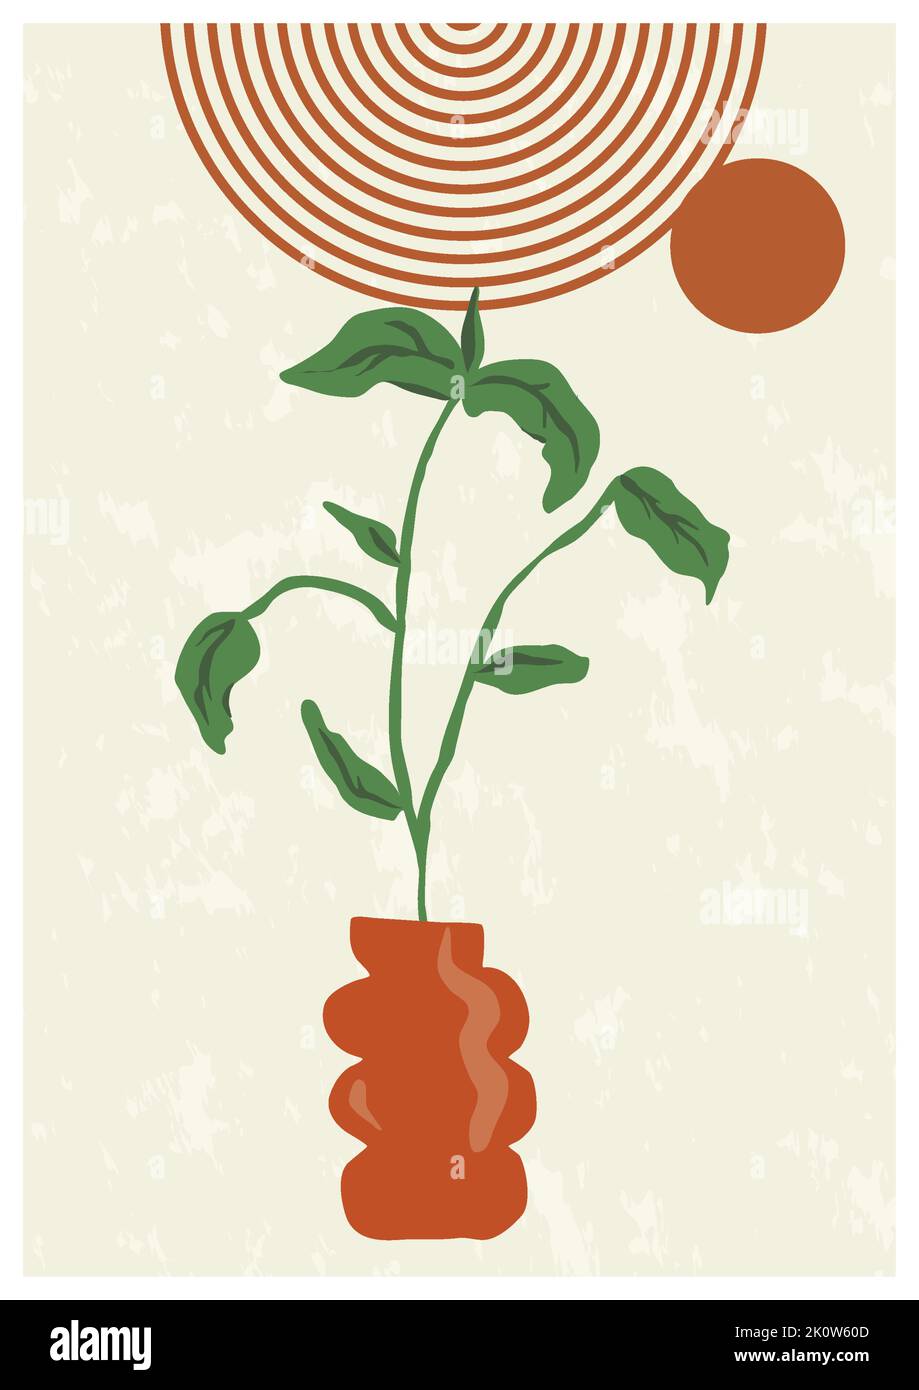 Creative minimaliste botanique formes organiques Art. Mur. Abstrait style bohémien Art contemporain des plantes Design pour décoration murale, carte postale, P Illustration de Vecteur